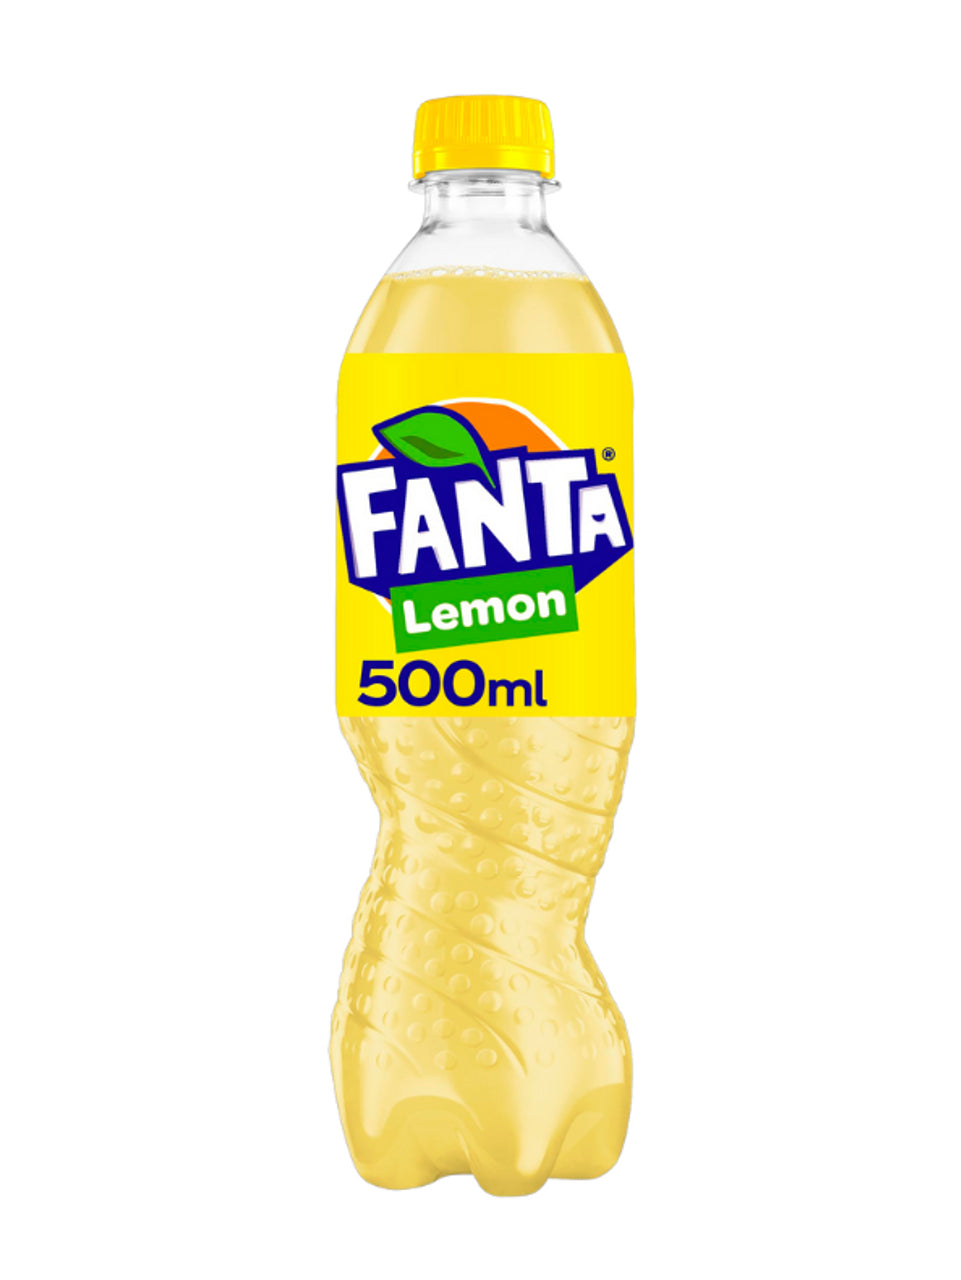 Fanta Lemon Bottle - 500ml